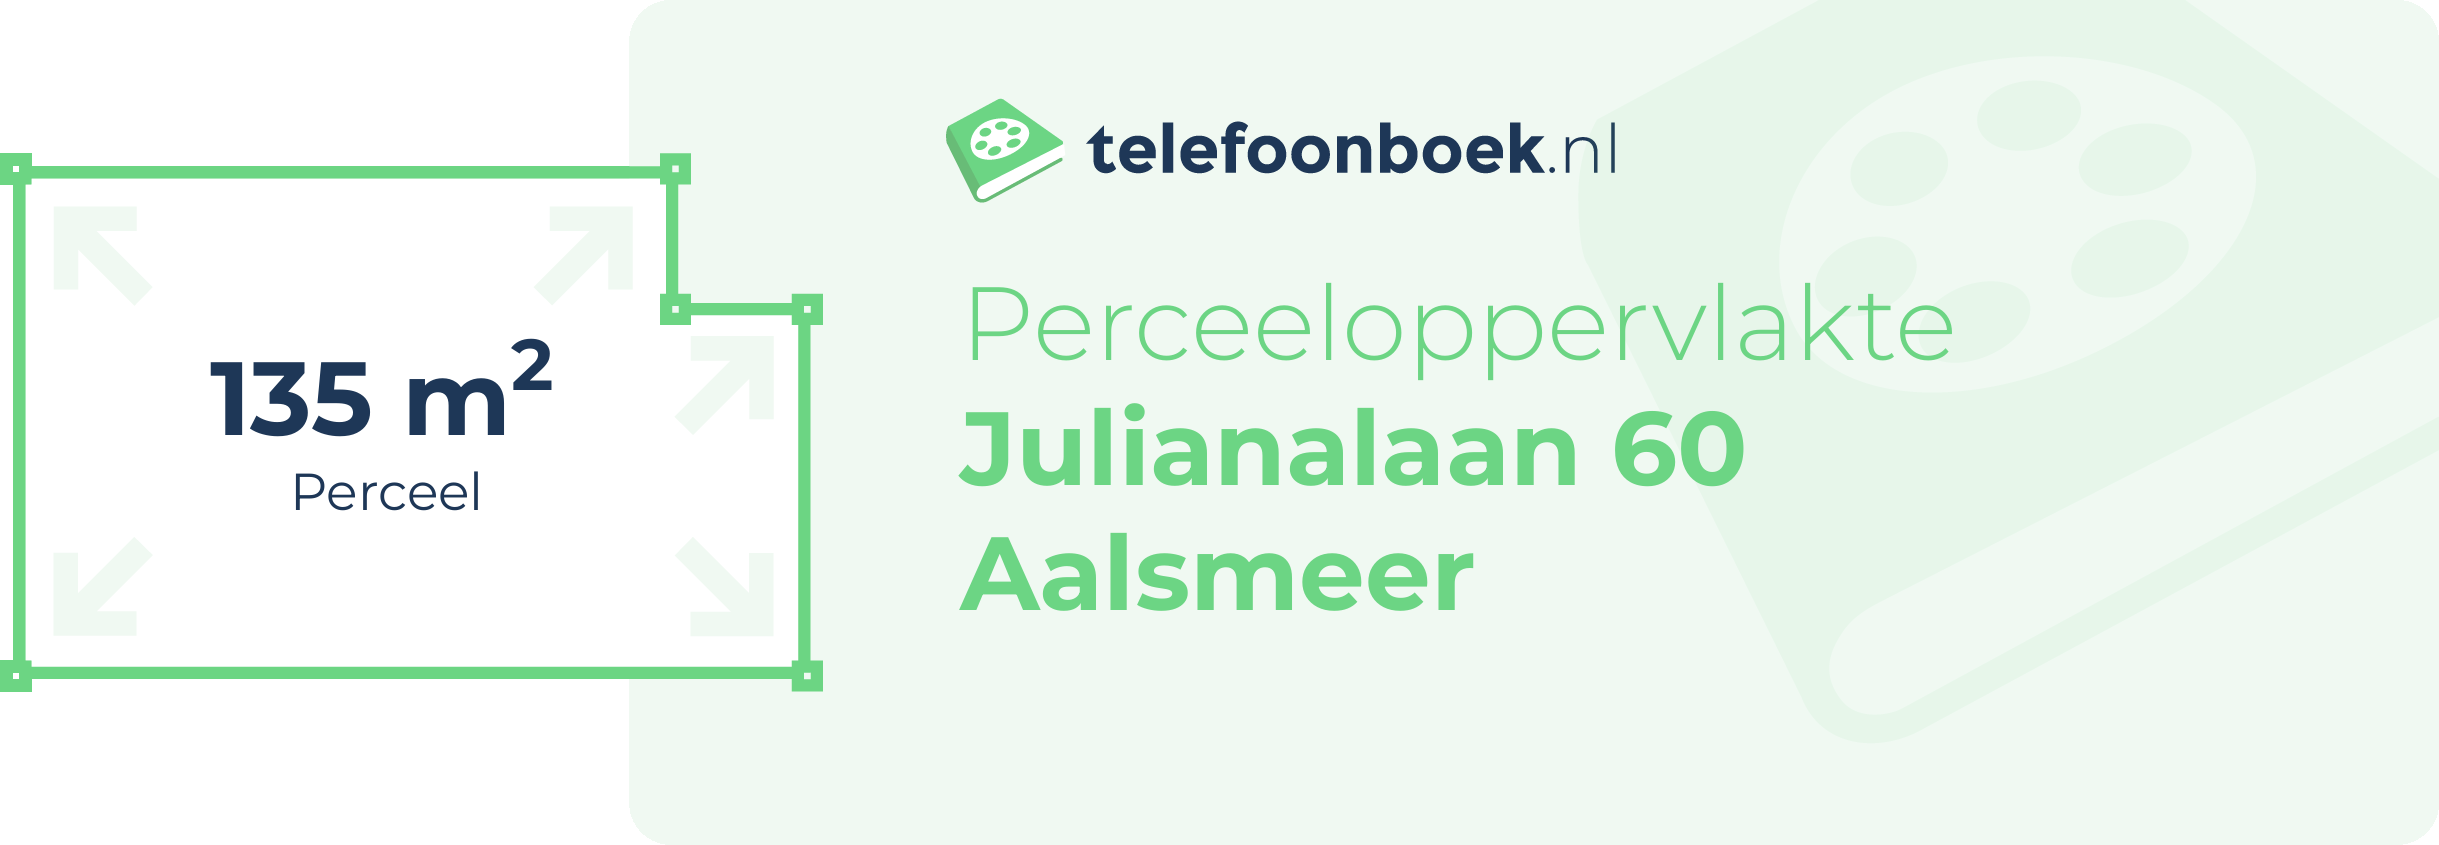 Perceeloppervlakte Julianalaan 60 Aalsmeer